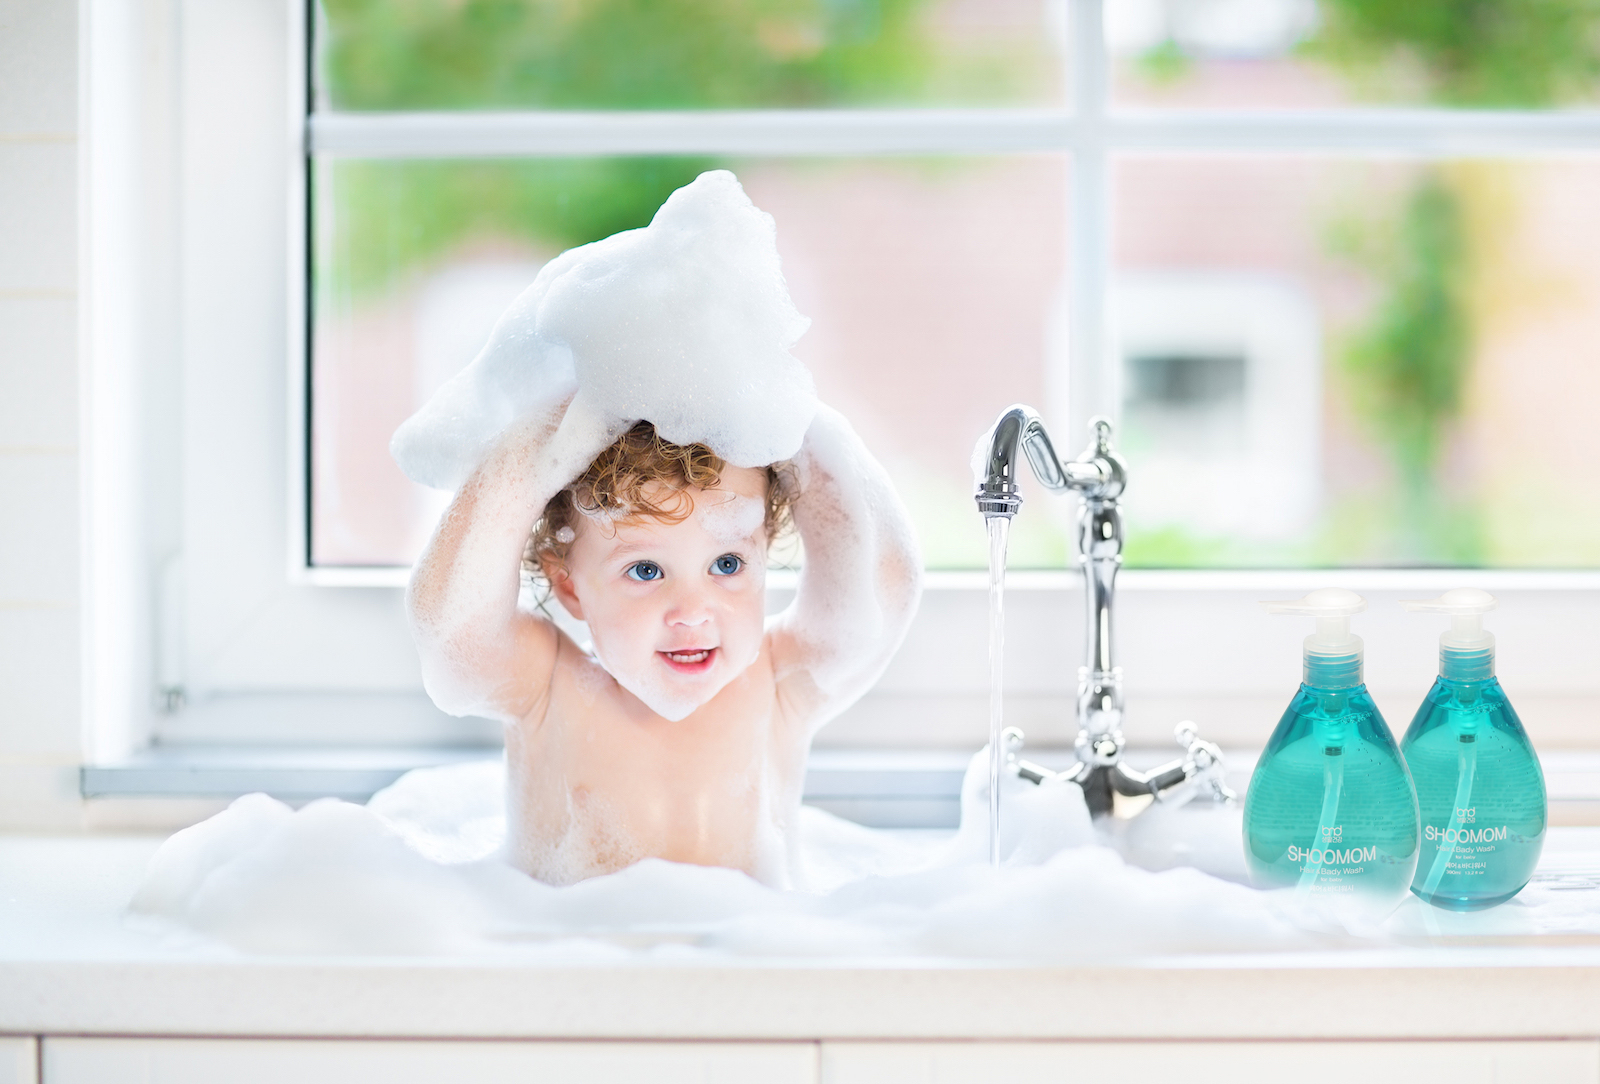 SHOOMOM - Nước rửa tay và vệ sinh da mặt hữu cơ cho bé